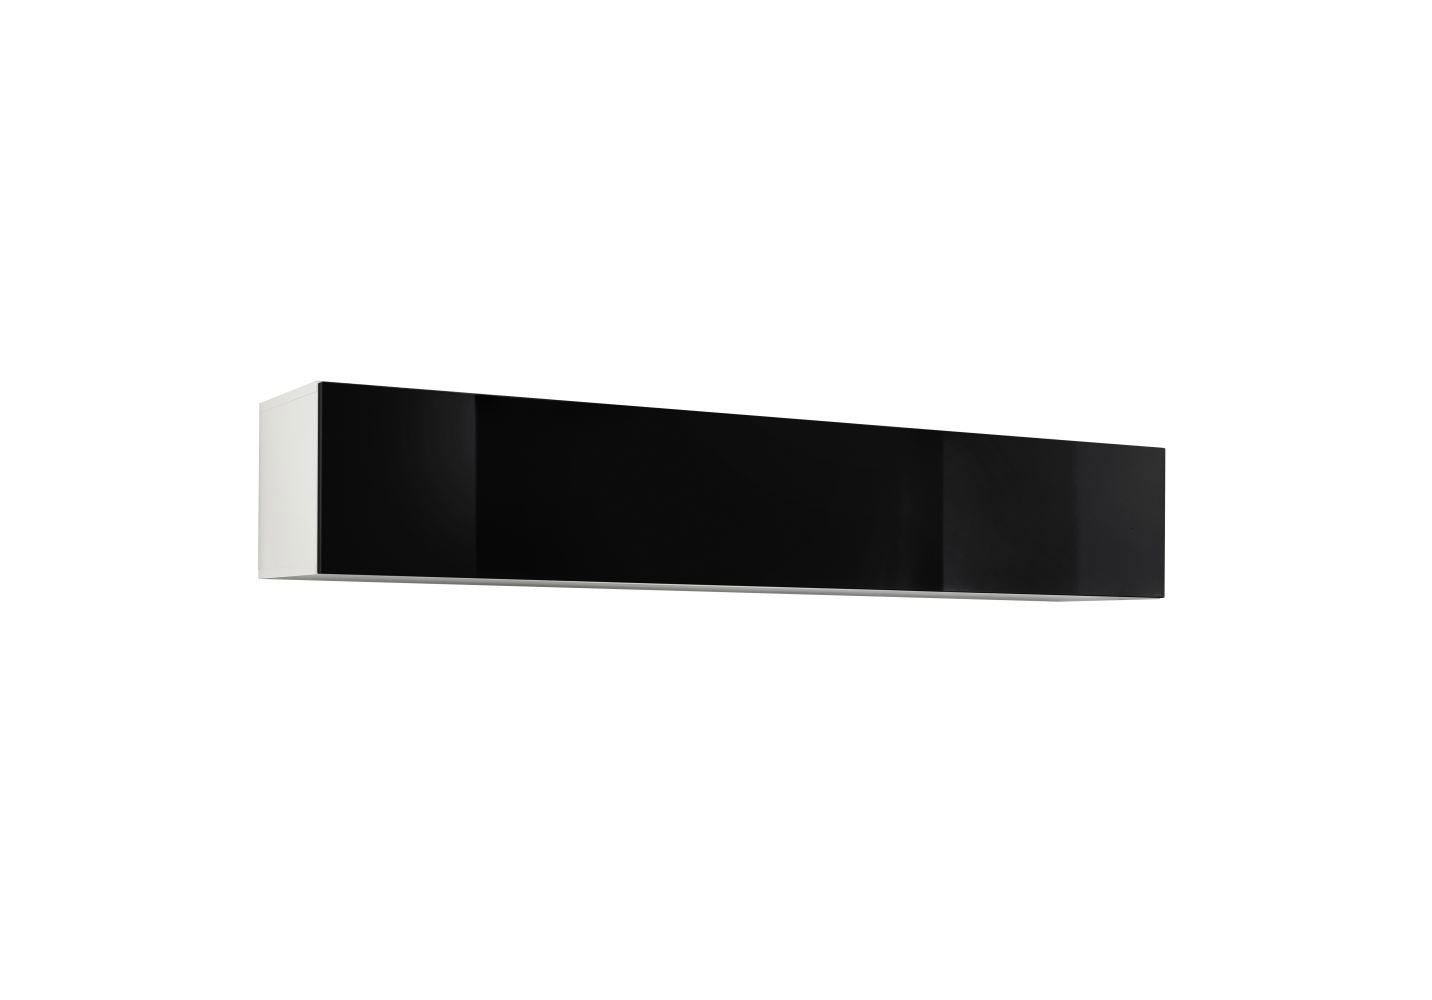 Raudberg 34 woonkamer wandmeubel, kleur: zwart / wit - Afmetingen: 30 x 160 x 29 cm (H x B x D), met push-to-open functie